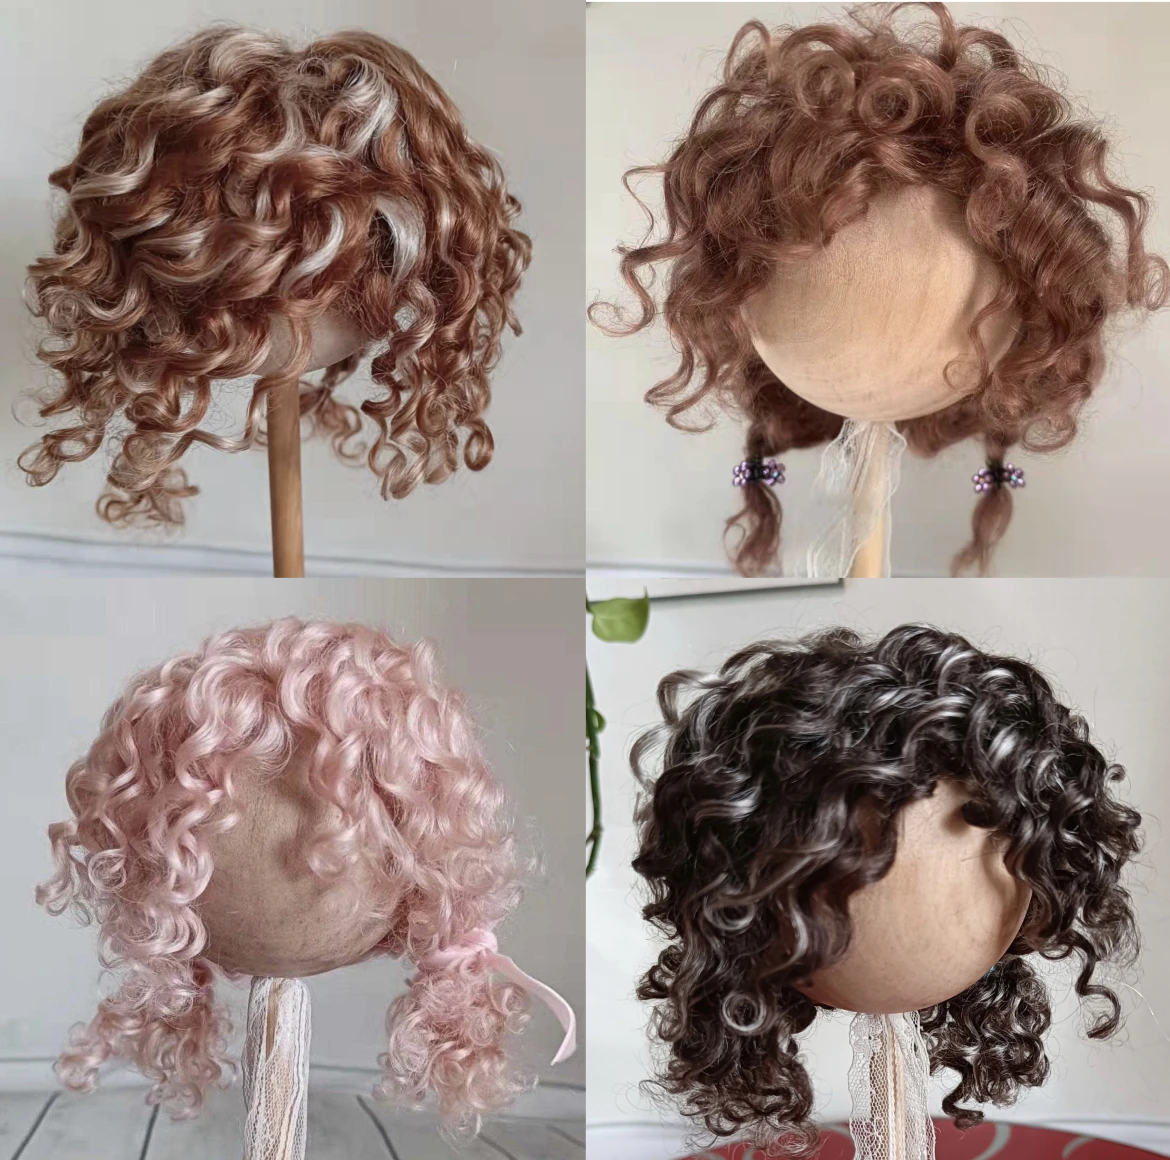 Кукольные парики для Blythe Qbaby, Мохеровые локоны на голове, 9-10 дюймов, бесплатная доставка